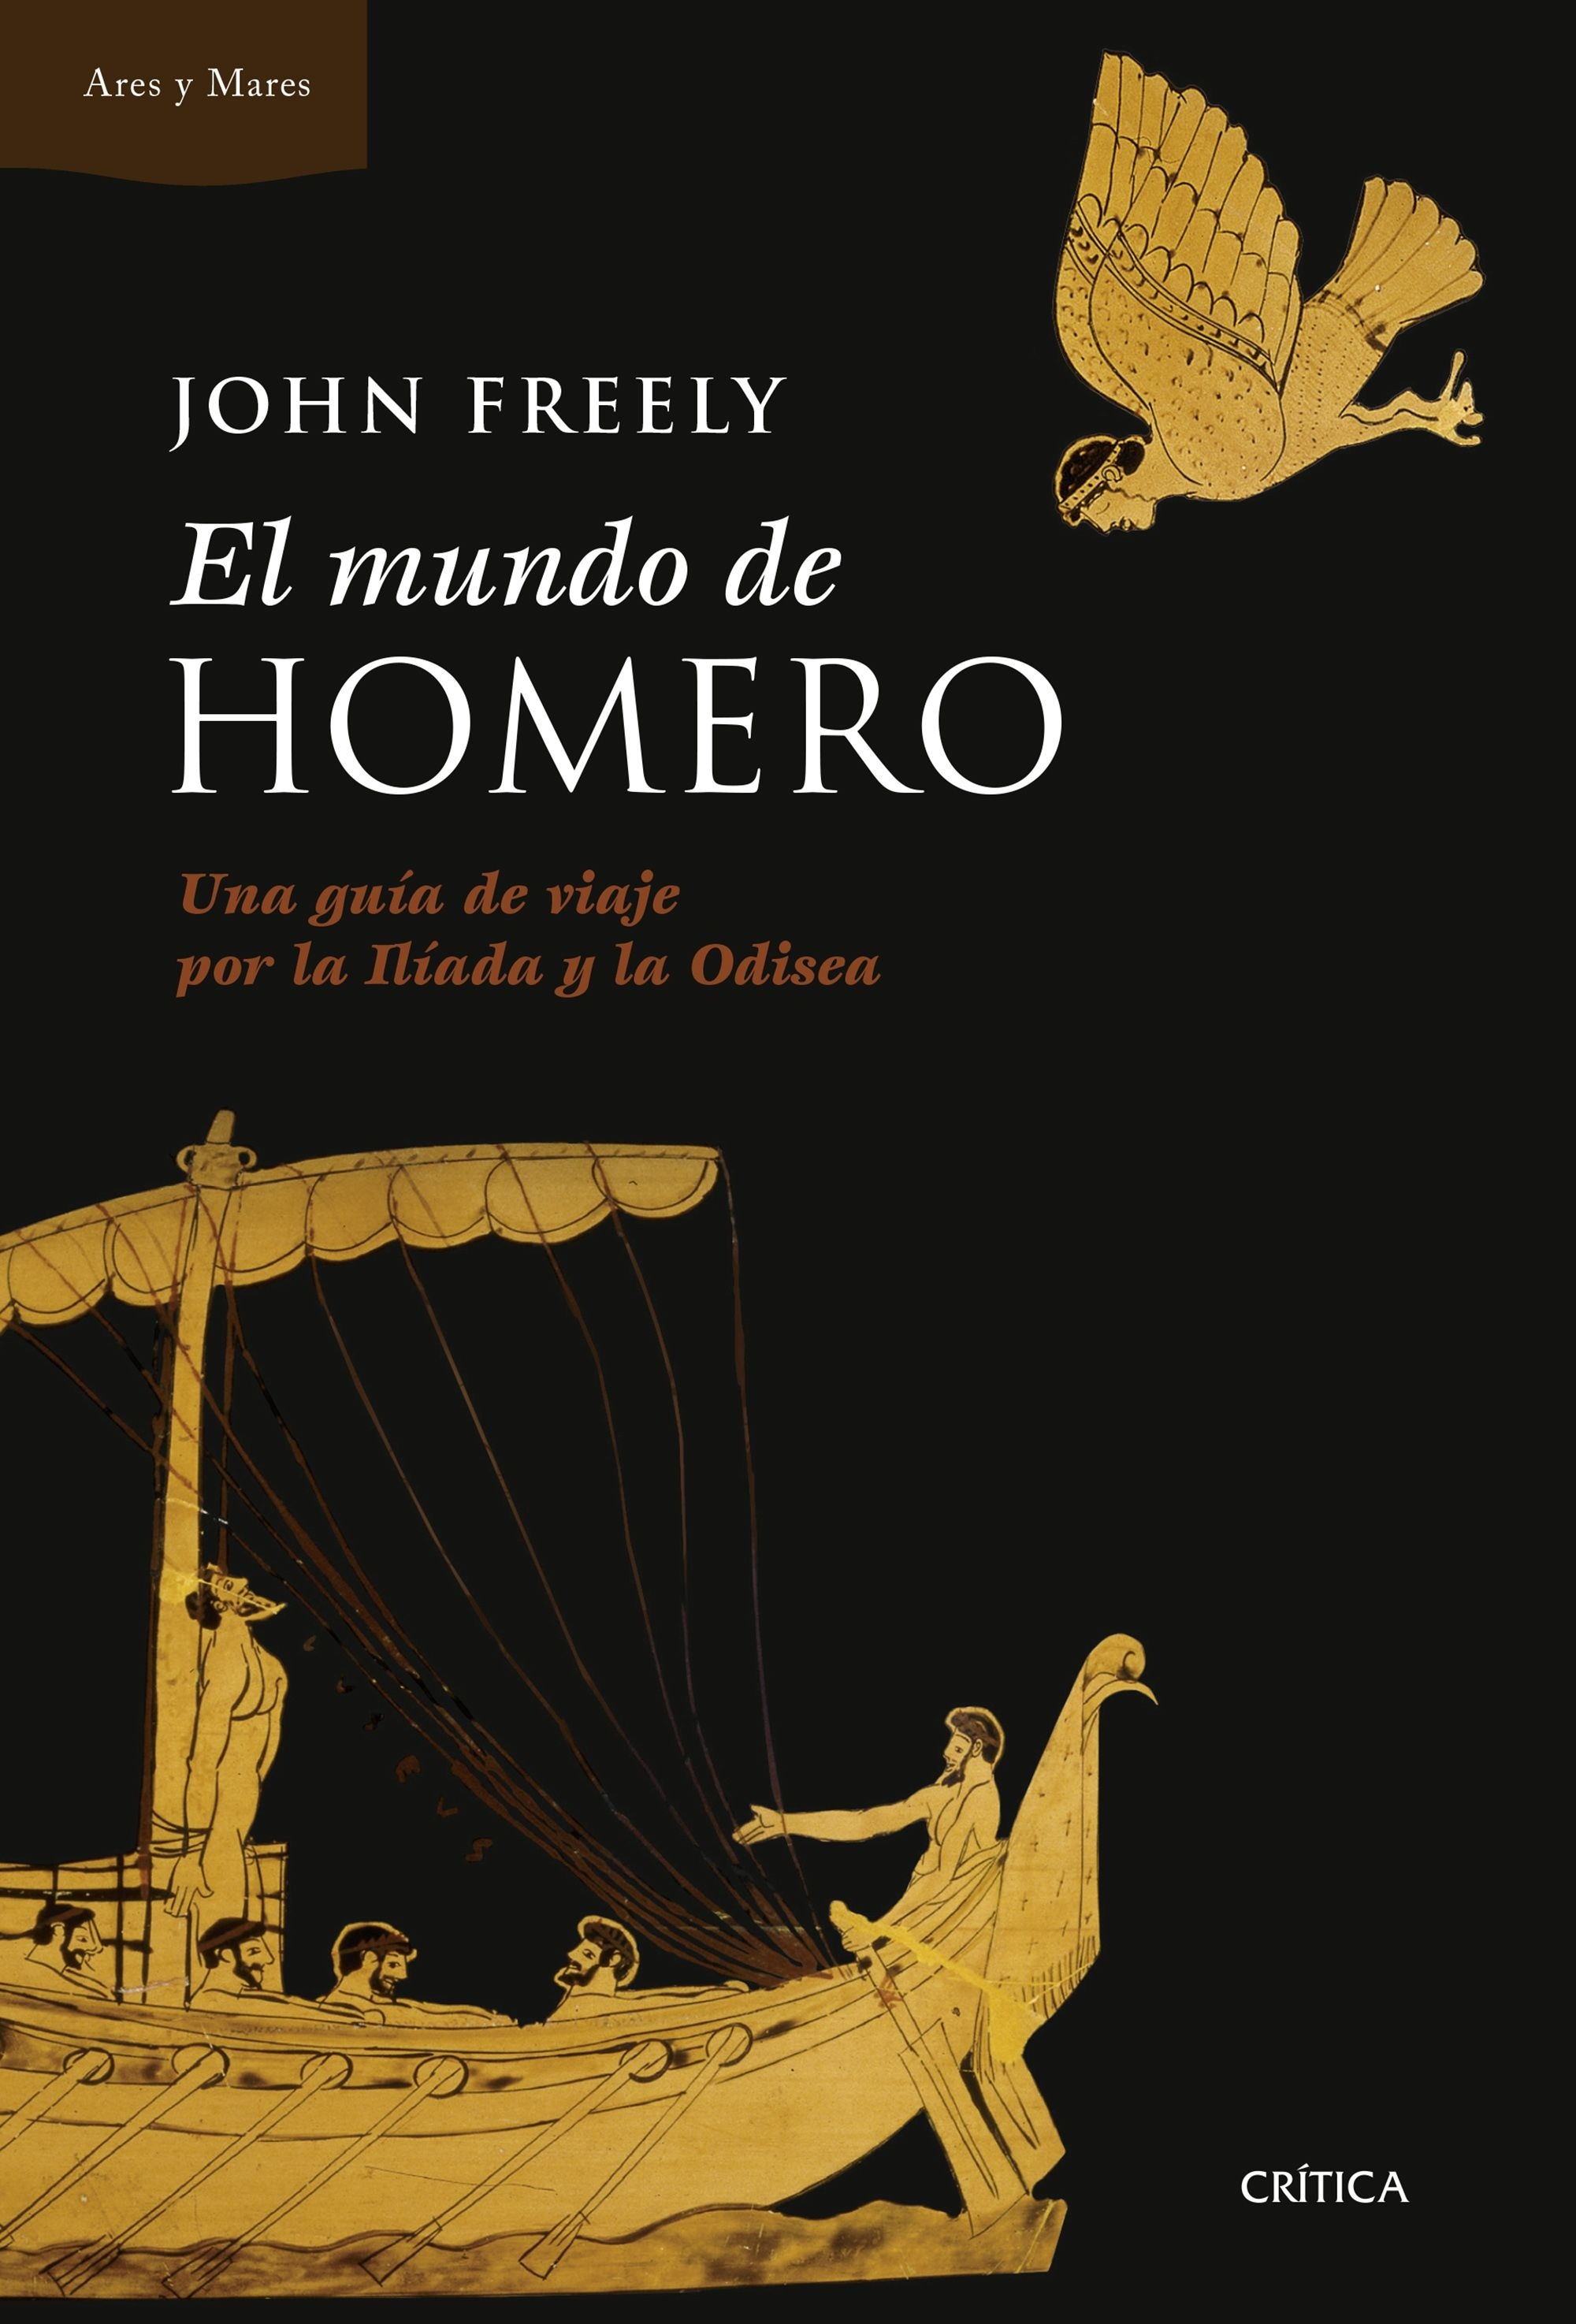 El mundo de Homero "Una guía de viaje por la Ilíada y la Odisea"